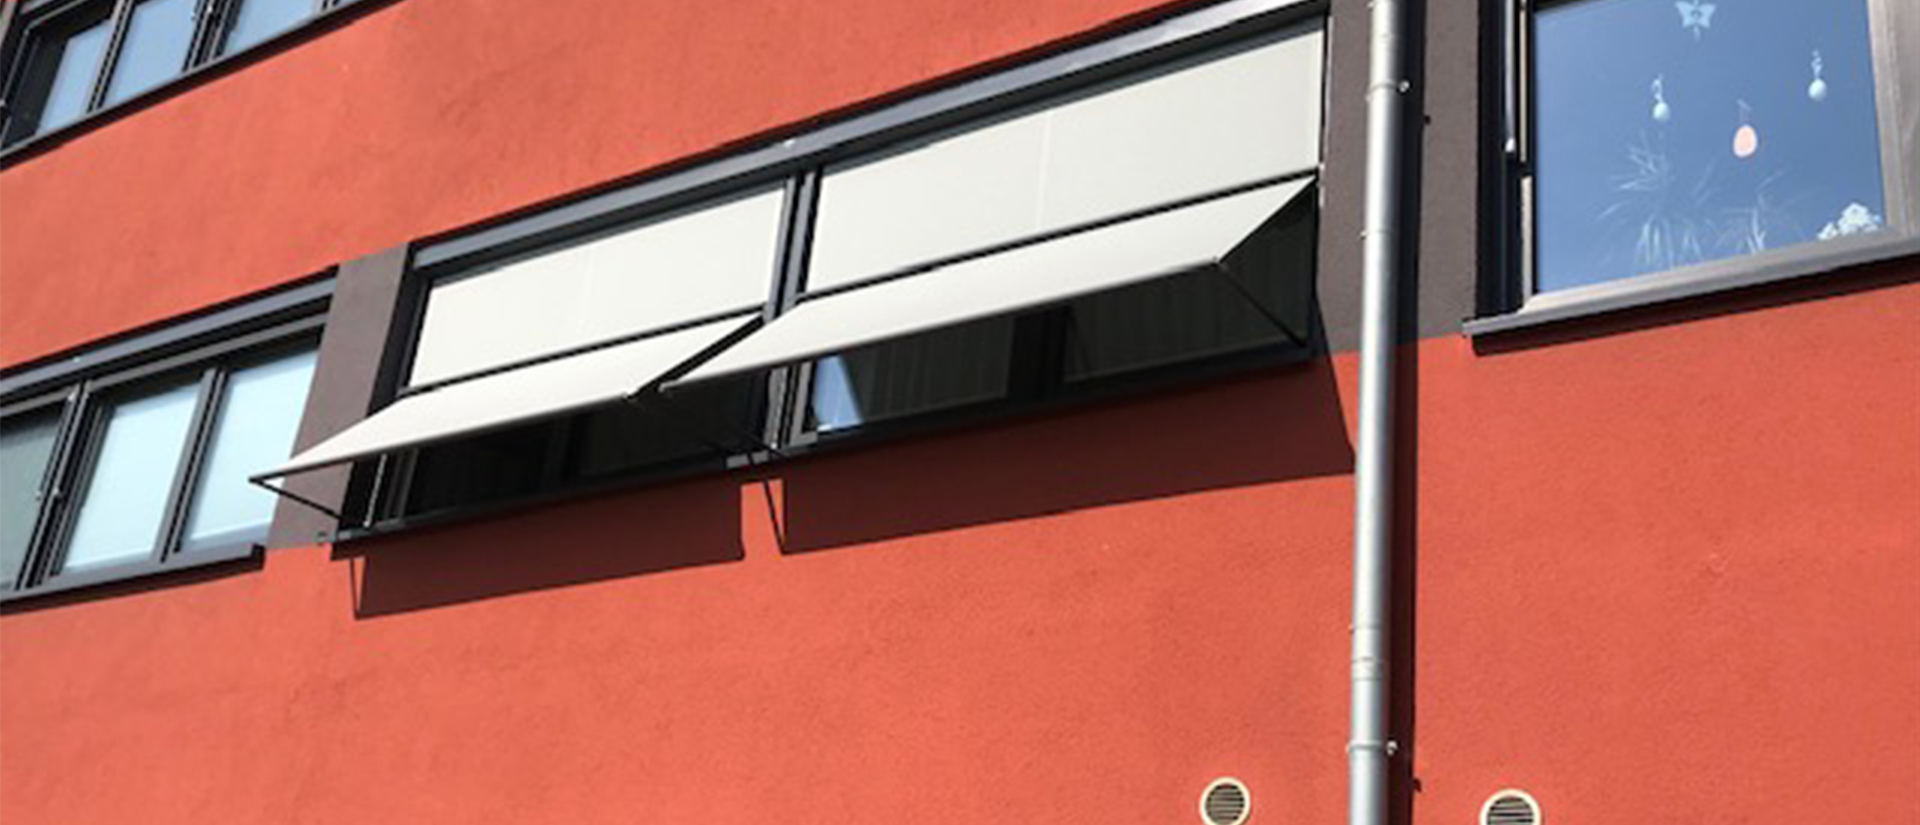 Herkenhoff Referenzen Sonnenschutz dunkle Fensterrahmen neben rotem Putz